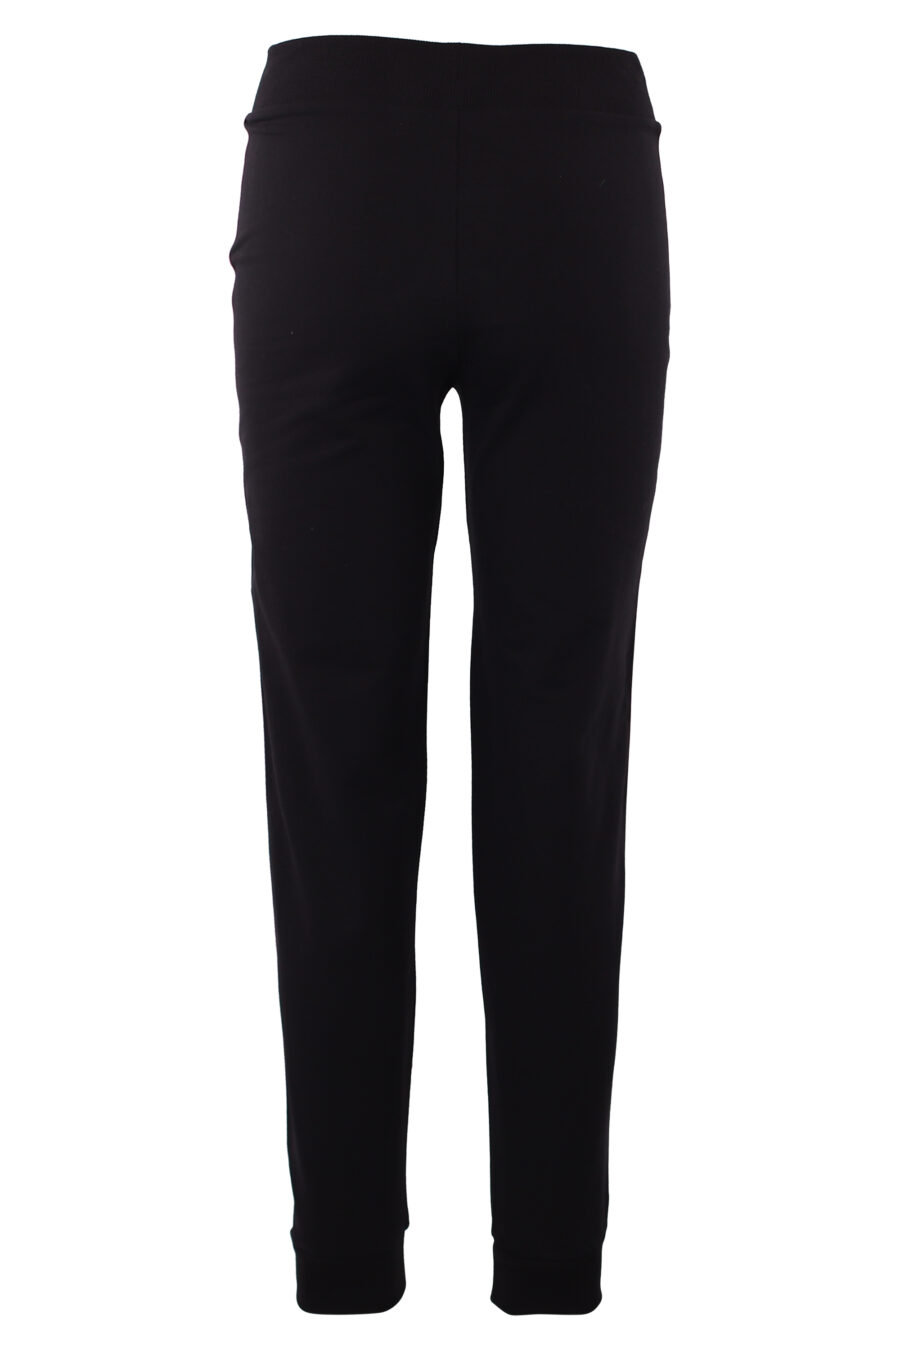 Pantalón de chándal negro con logo en cinta lateral y logo negro - IMG 6282